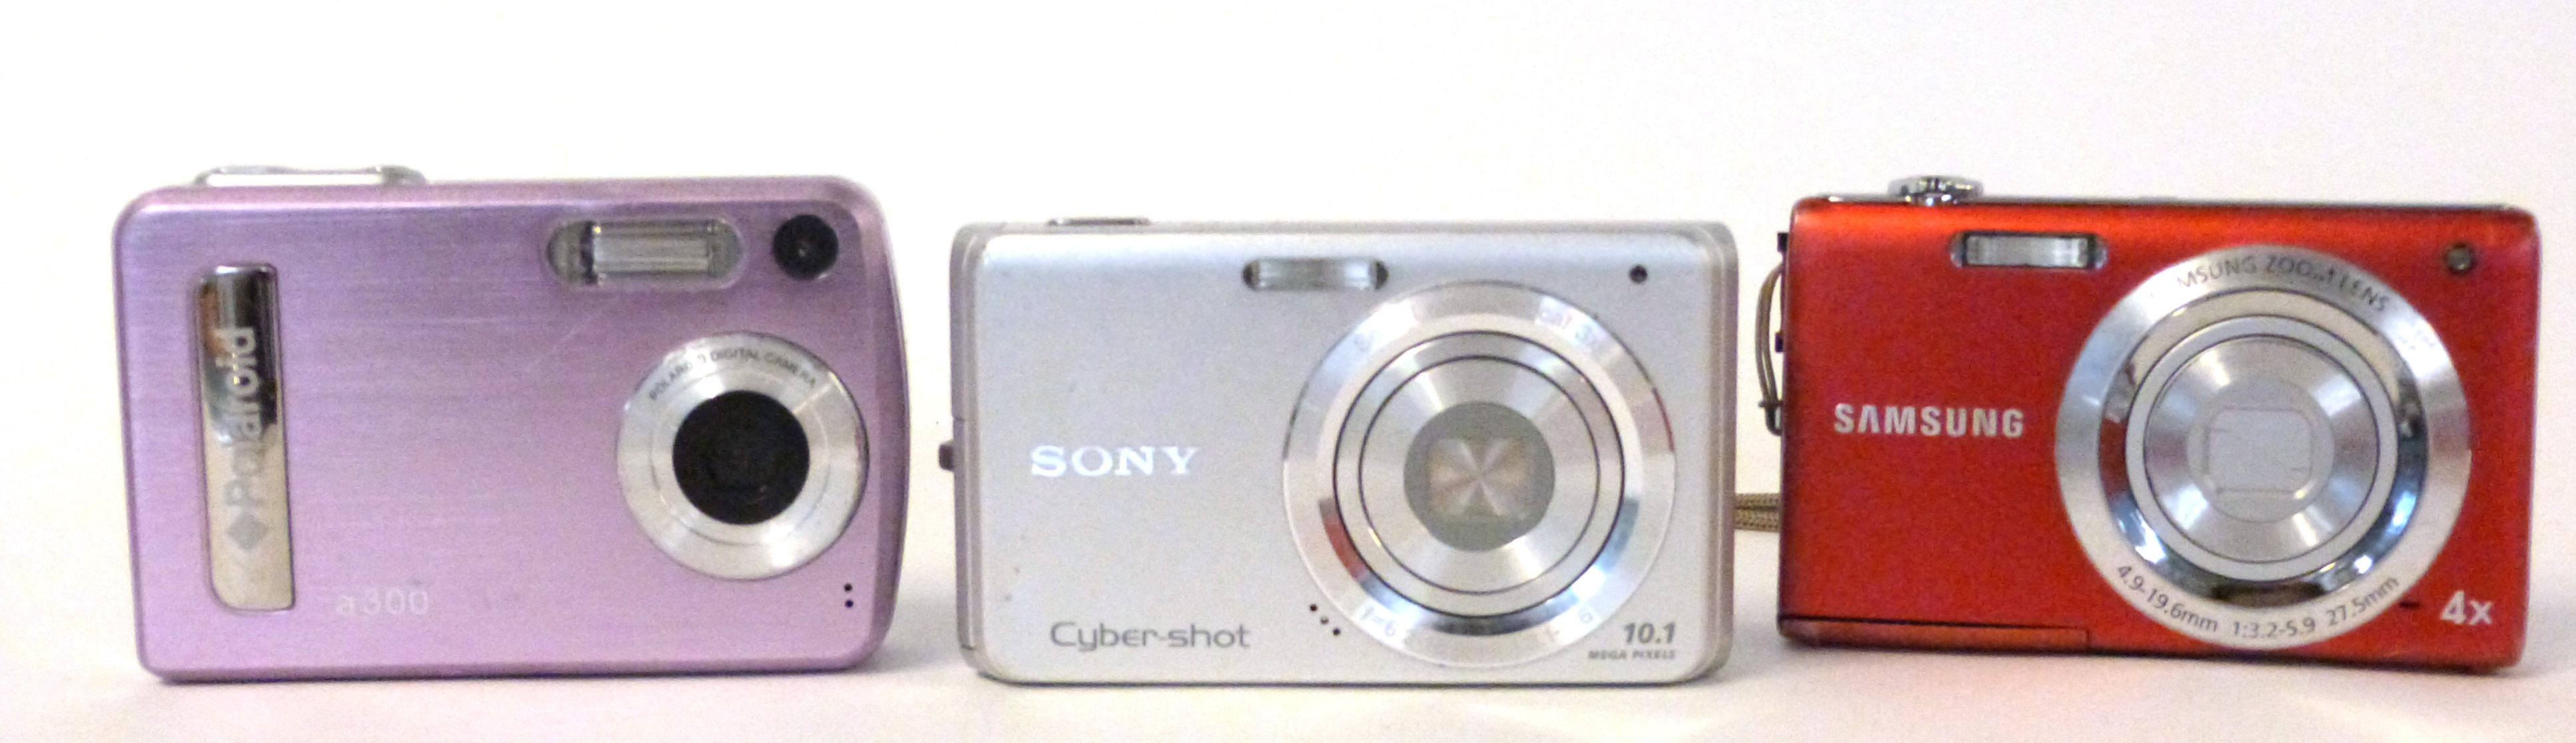 Samsung ST61 digital camera, a Sony DSC-W180 digital camera with a Polaroid A300 digital camera